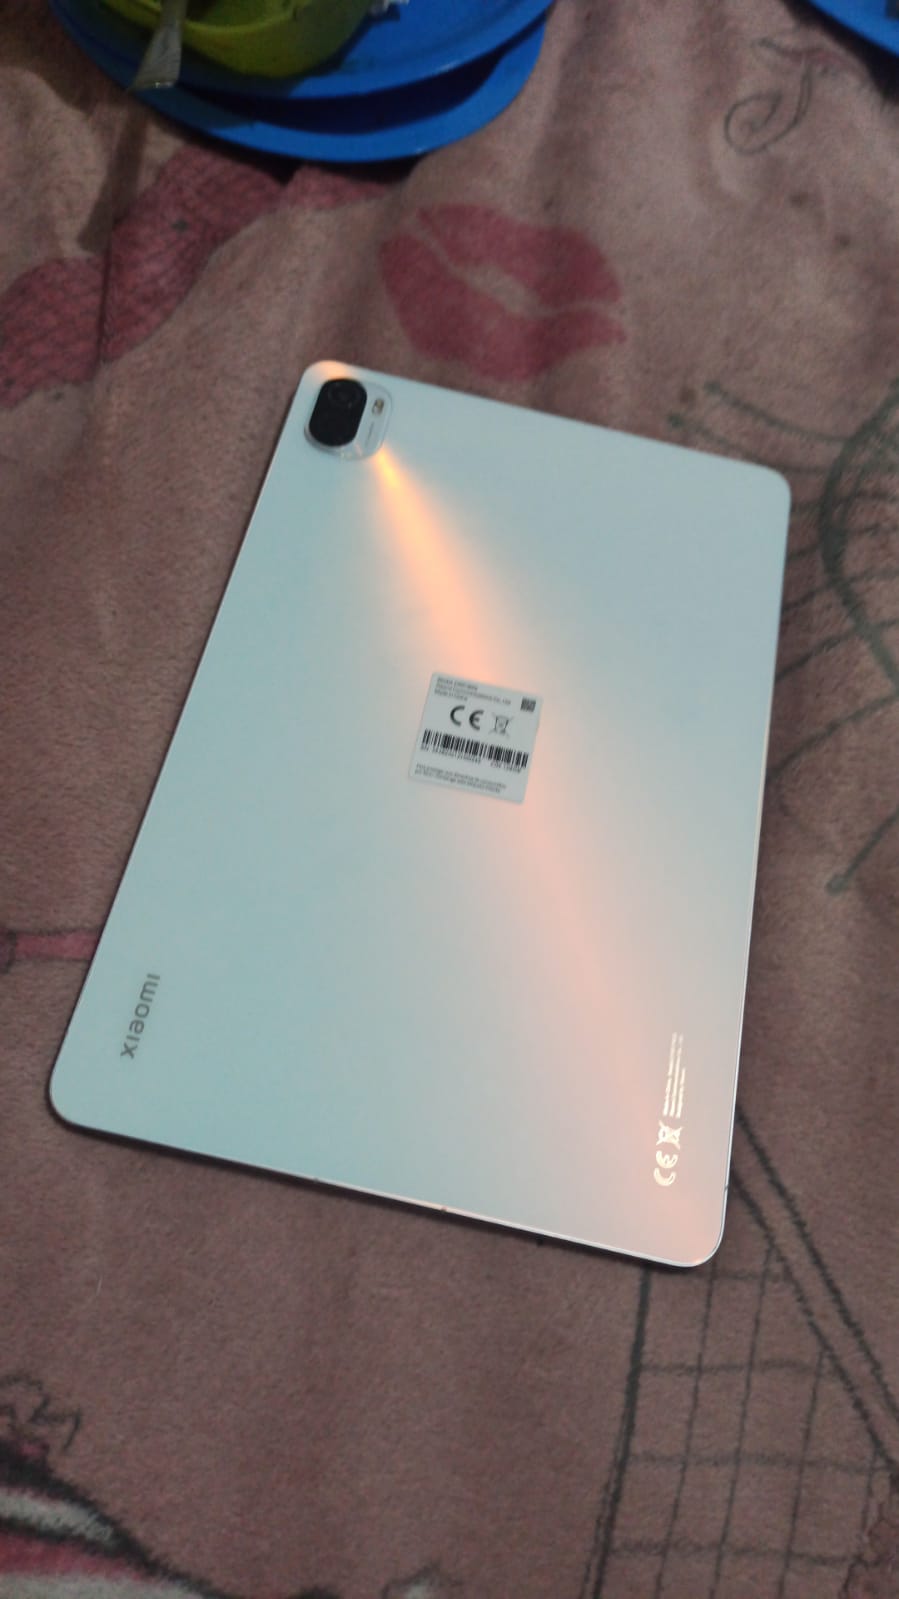 Tablet Xiaomi Xiaomi Pad 6 Pad 6 11 256GB negra y 8GB de memoria